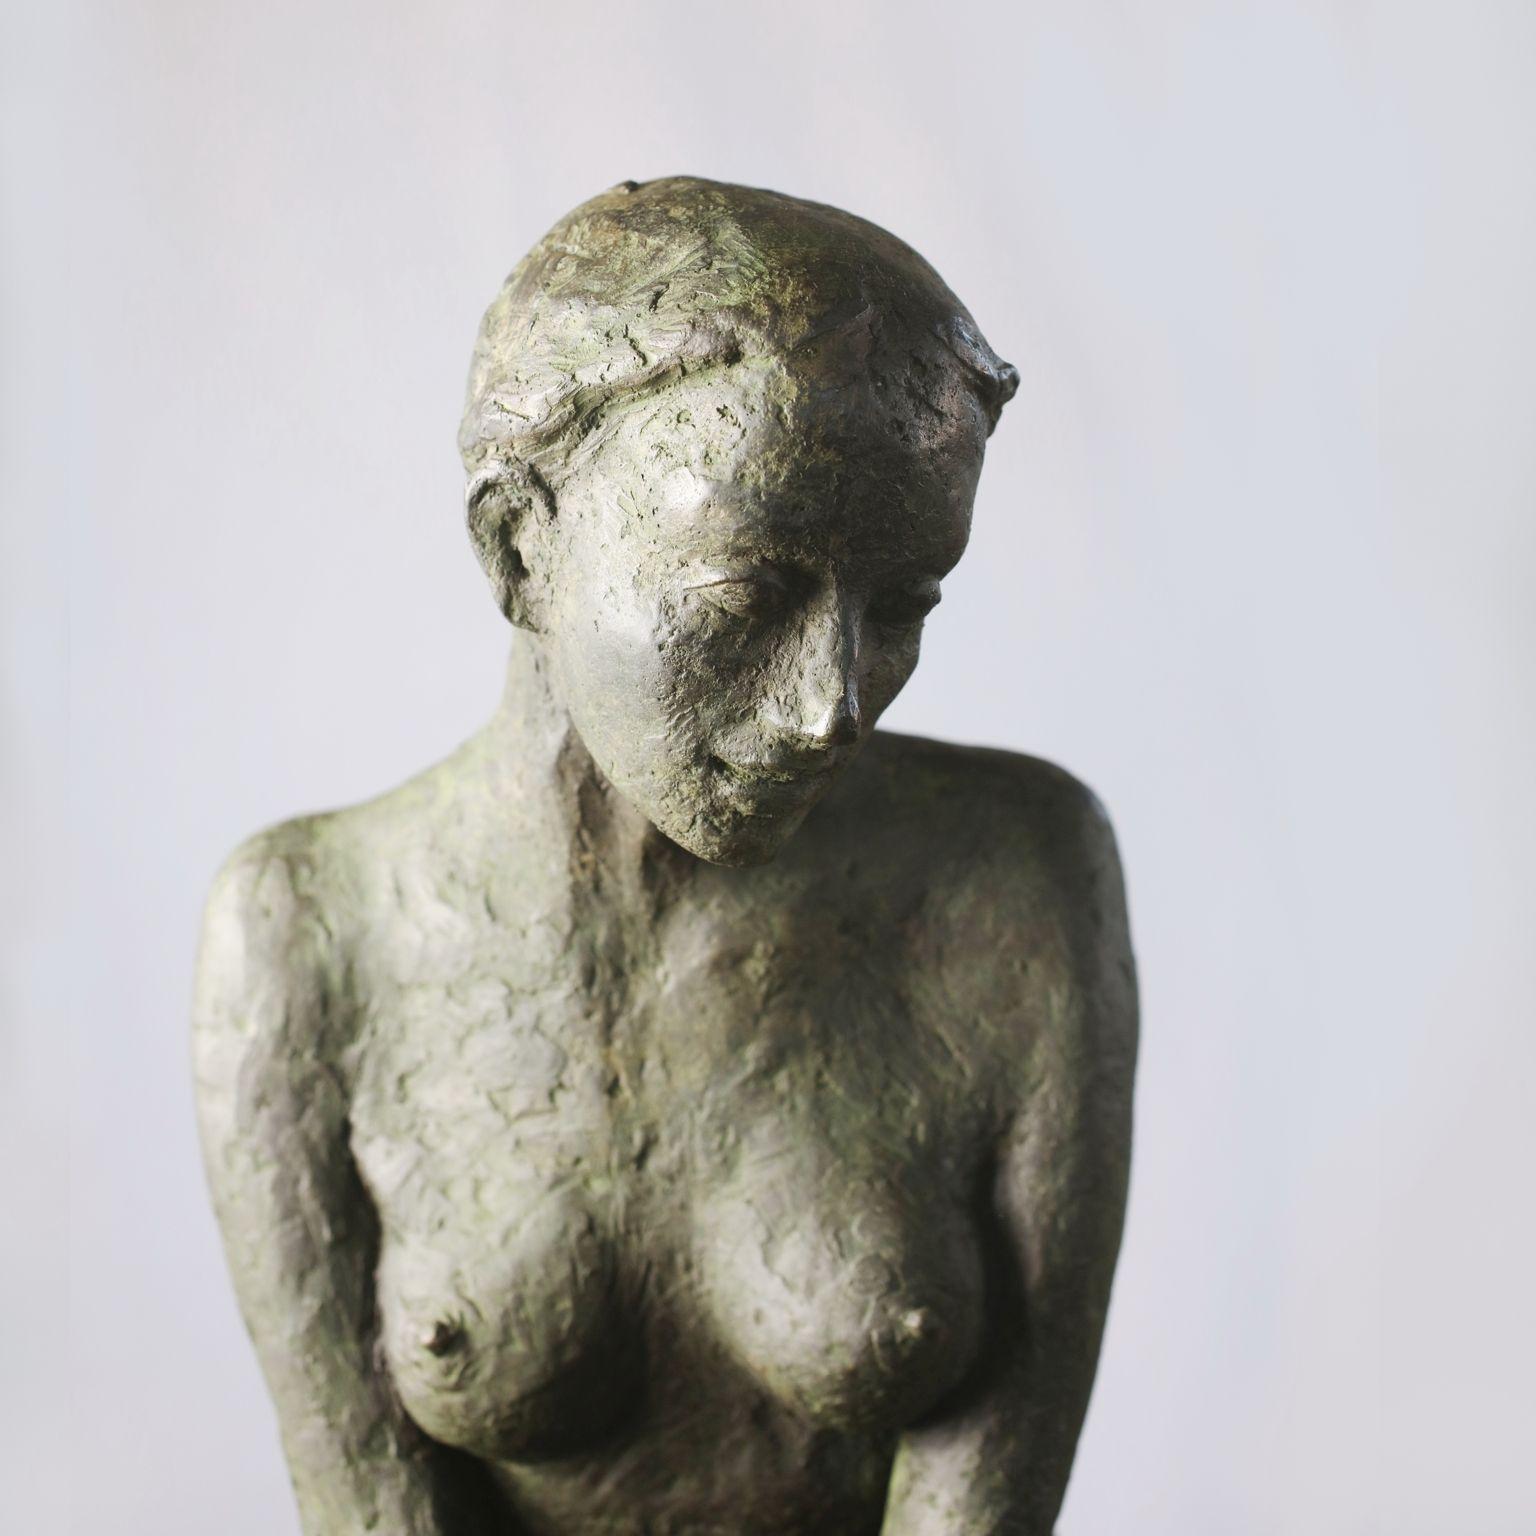 female figurative sculpture